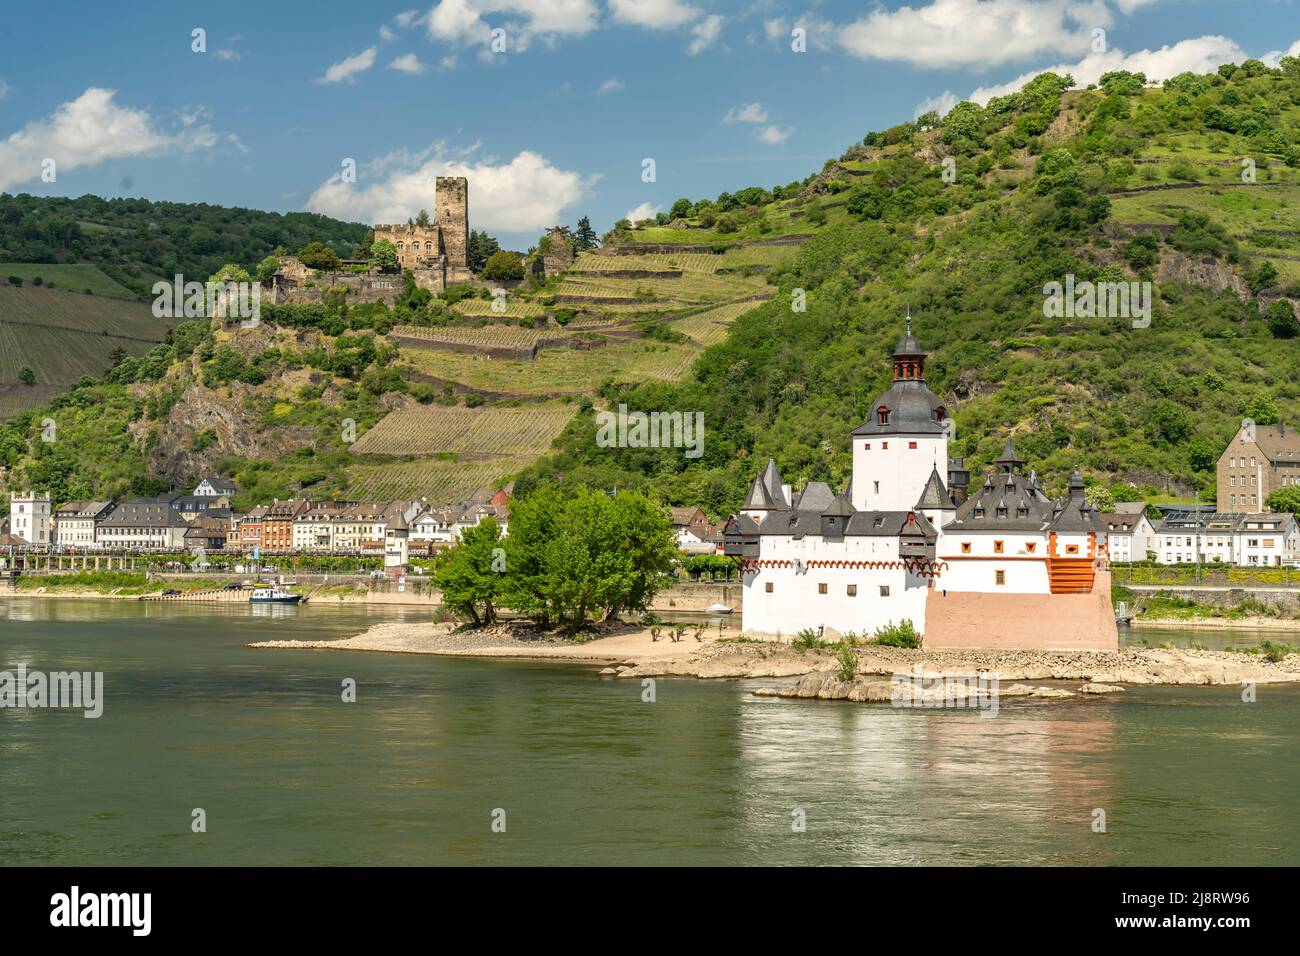 Burg Pfalzgrafenstein auf einer Insel im Rhein und Burg Gutenfels, Welterbe Oberes Mittelrheintal, Kaub, Rheinland-Pfalz, Deutschland | Pfalzgrafe Foto Stock